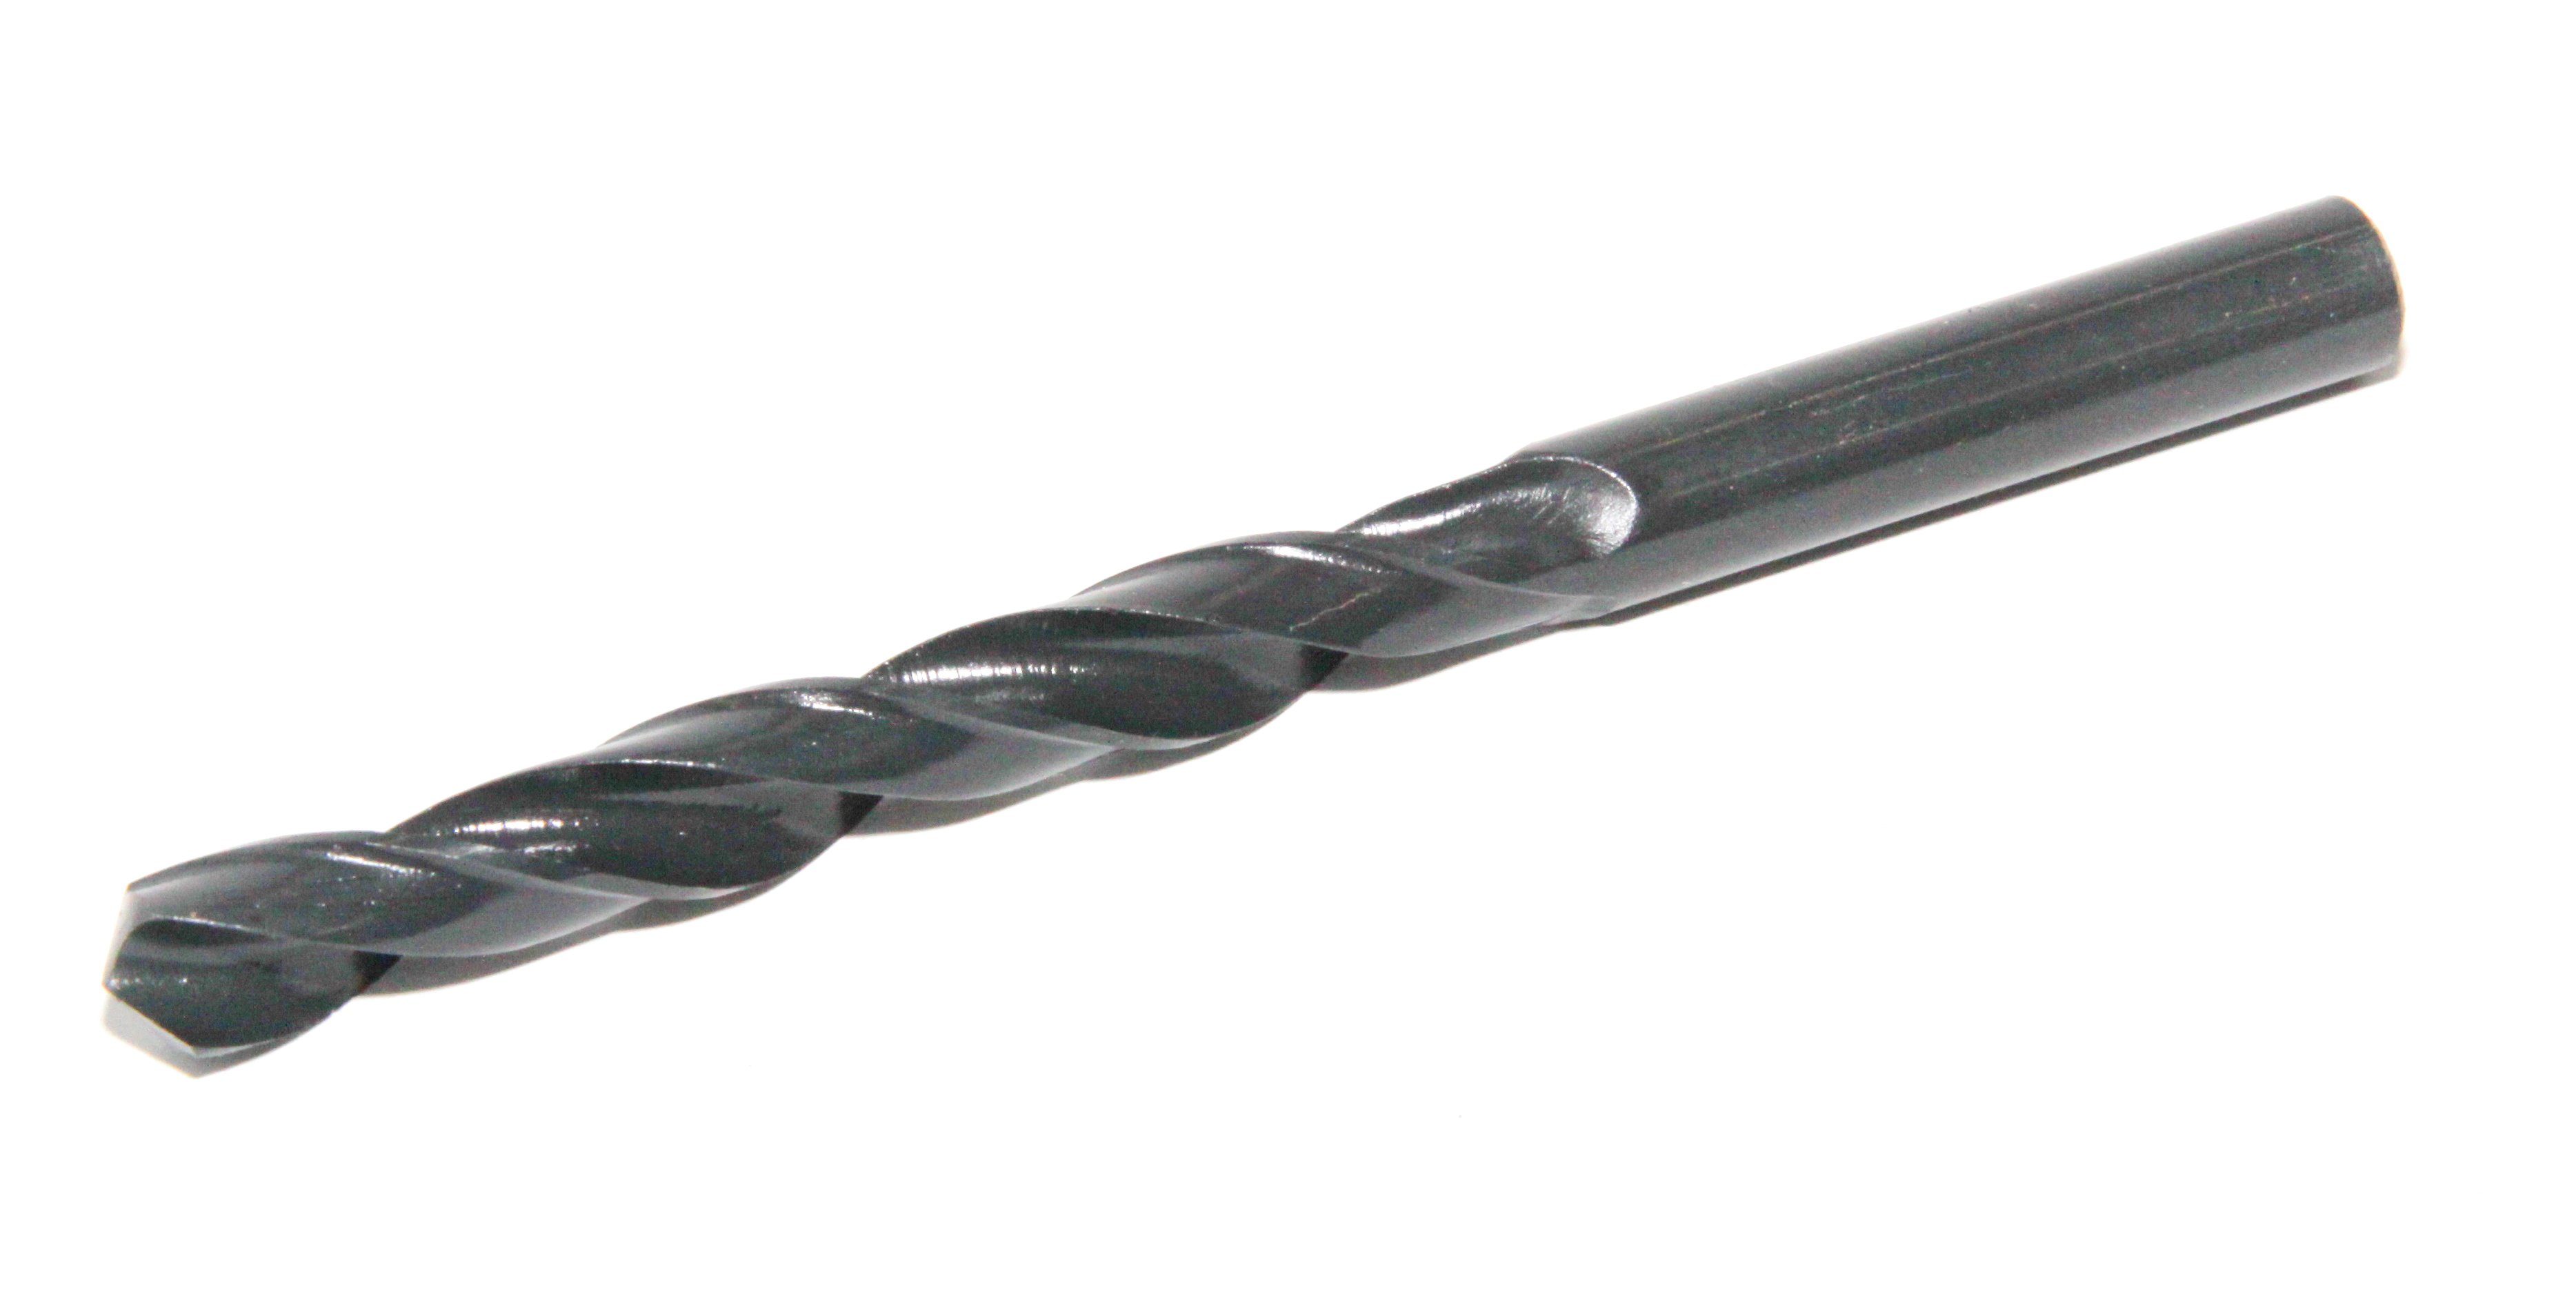 PeTools Metallbohrer Spiralbohrer HSS-R DIN338, Stahl-Bohrer, HSS-R, Qualität (230-tlg), Metallbohrer 1-13mm Stahlbohrer 230tlg